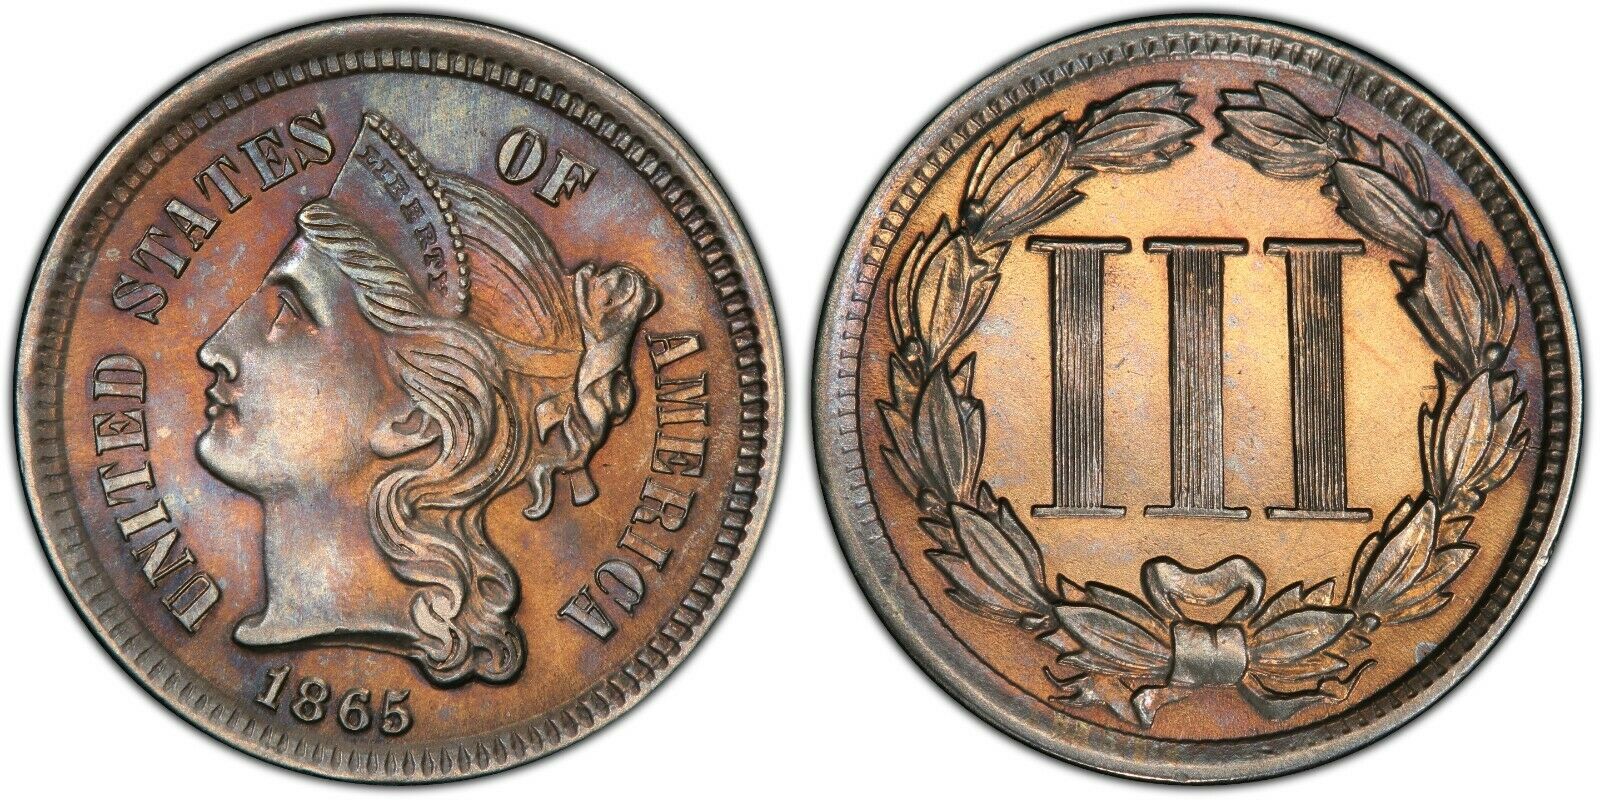 1865 3 cent nickel.jpg